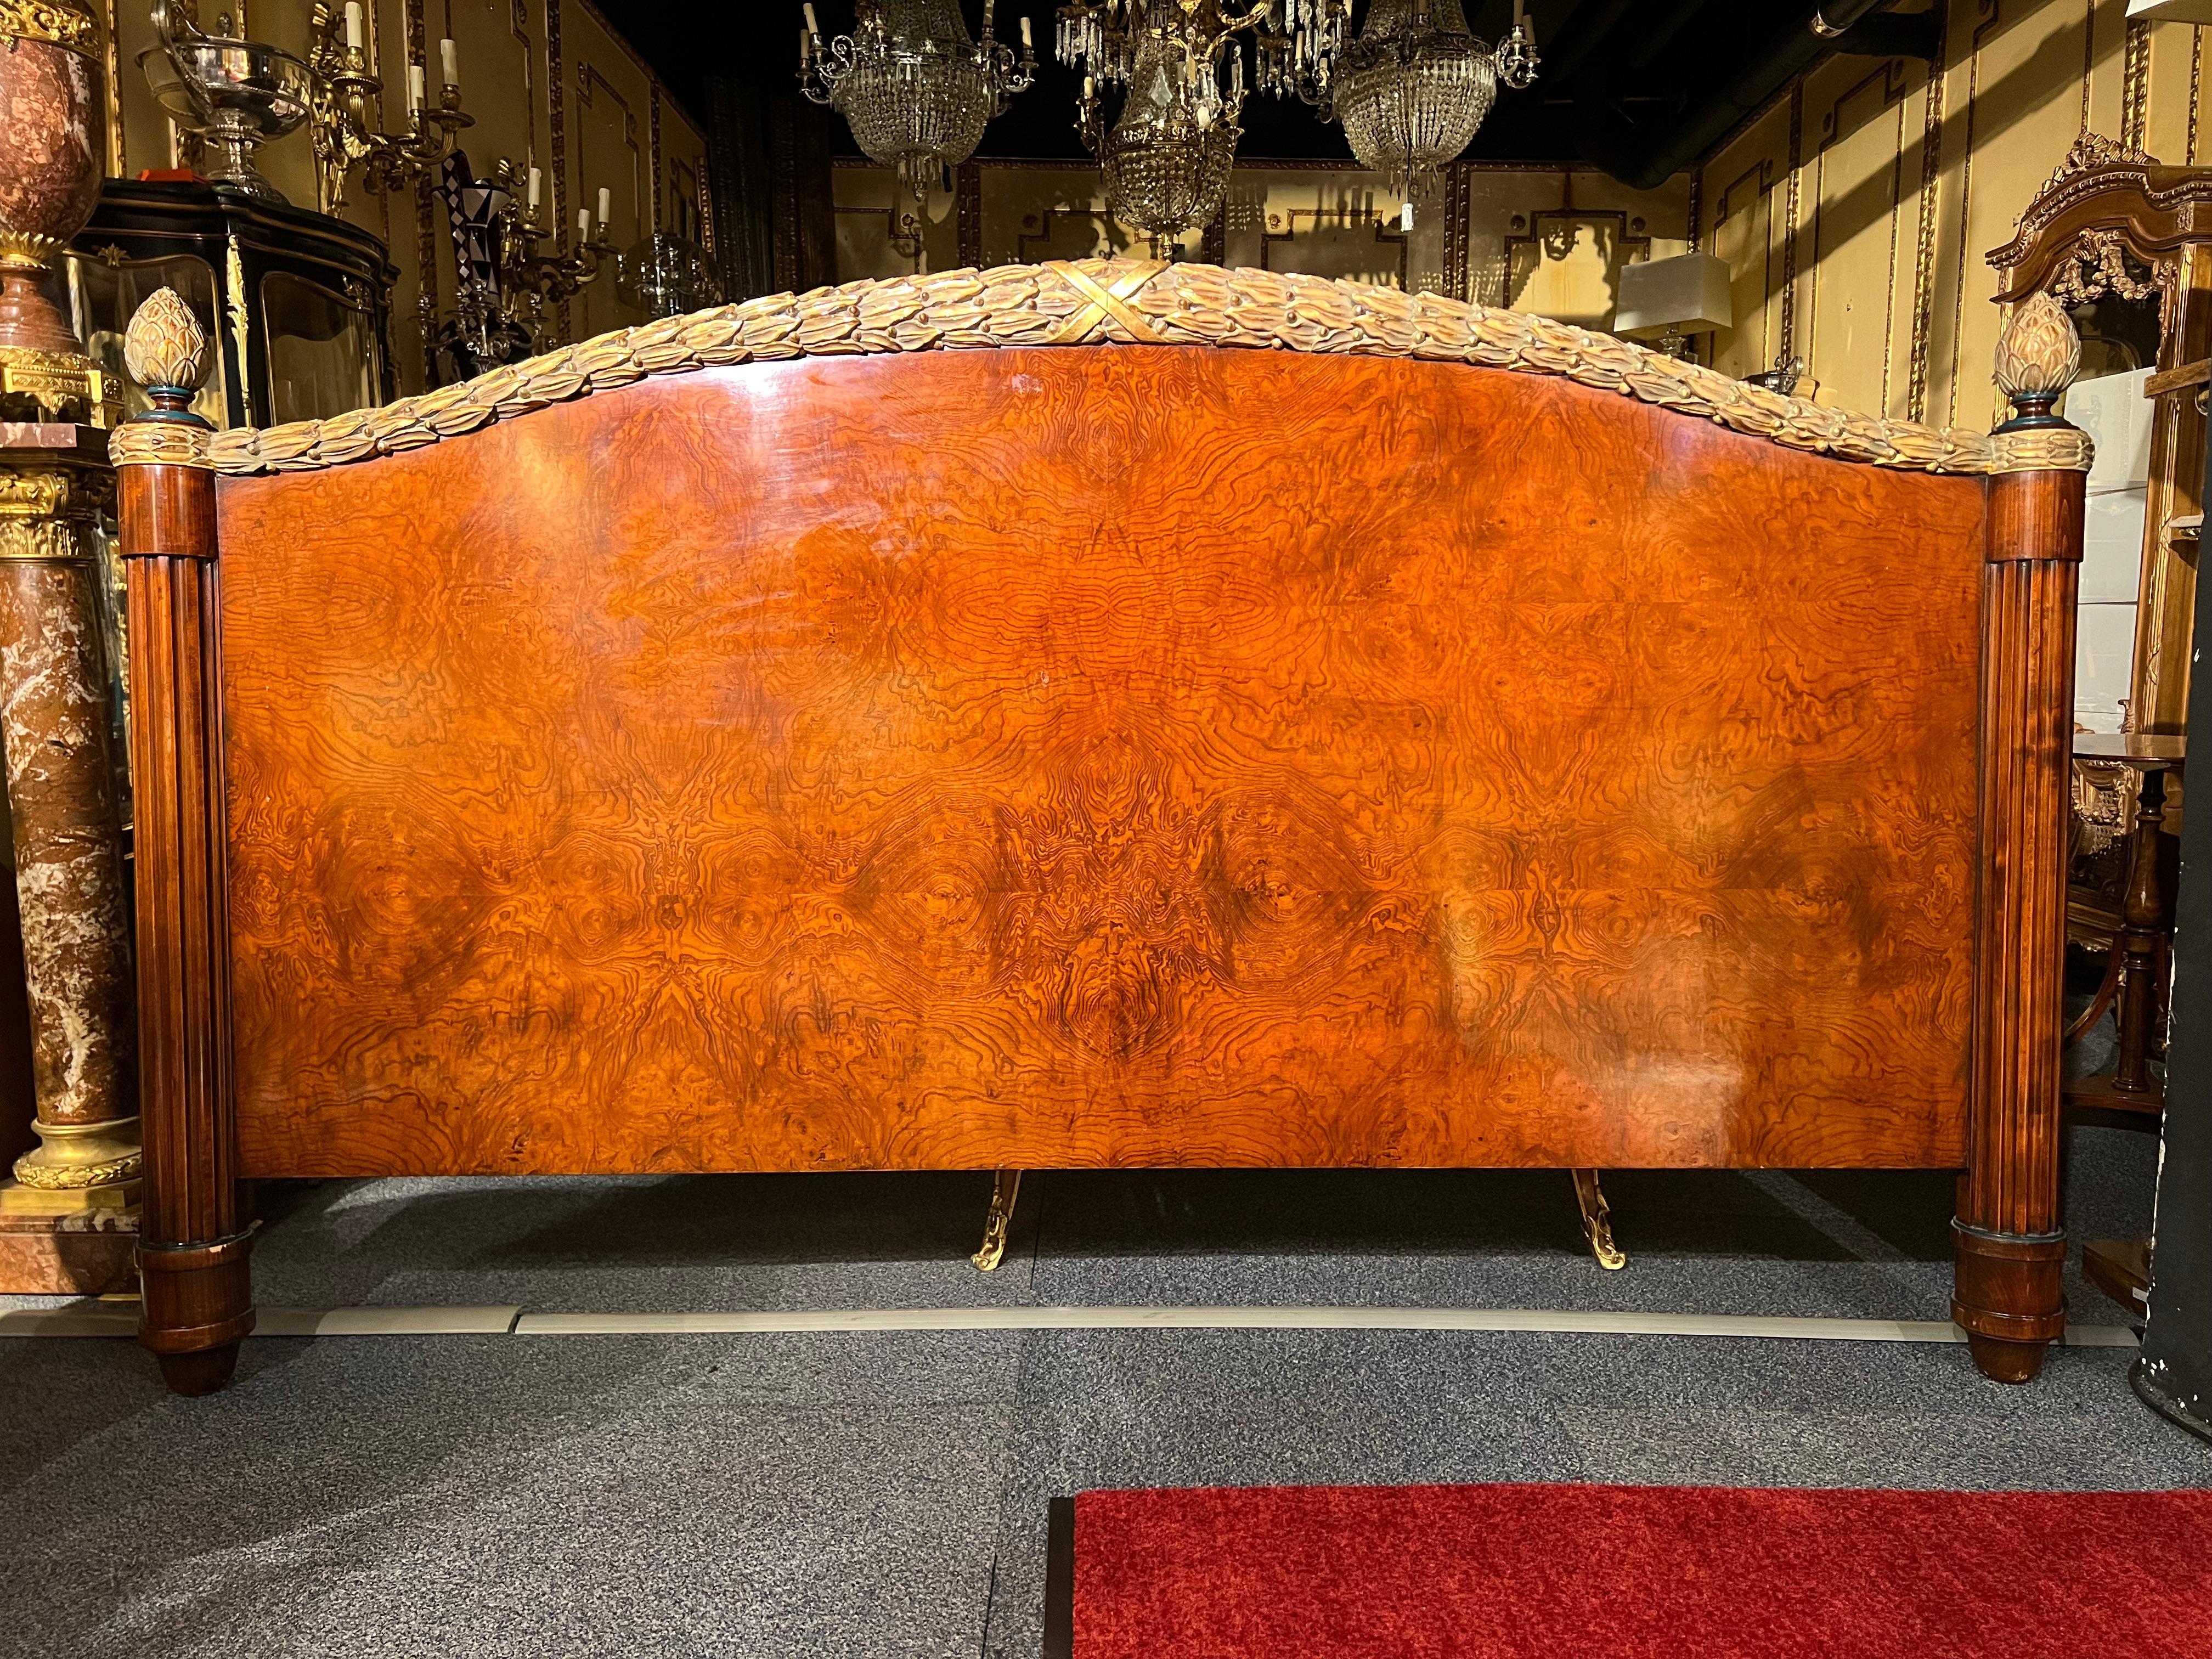 Bettkopfteil aus einer Suite des Wiener 5 Sterne Hotels im Louis Seize Stil.
Massivholz geschnitzt mit Wurzelfurnier.
Gerahmt mit schönen Lorbeerkranzschnitzereien mit Polimentvergoldung.